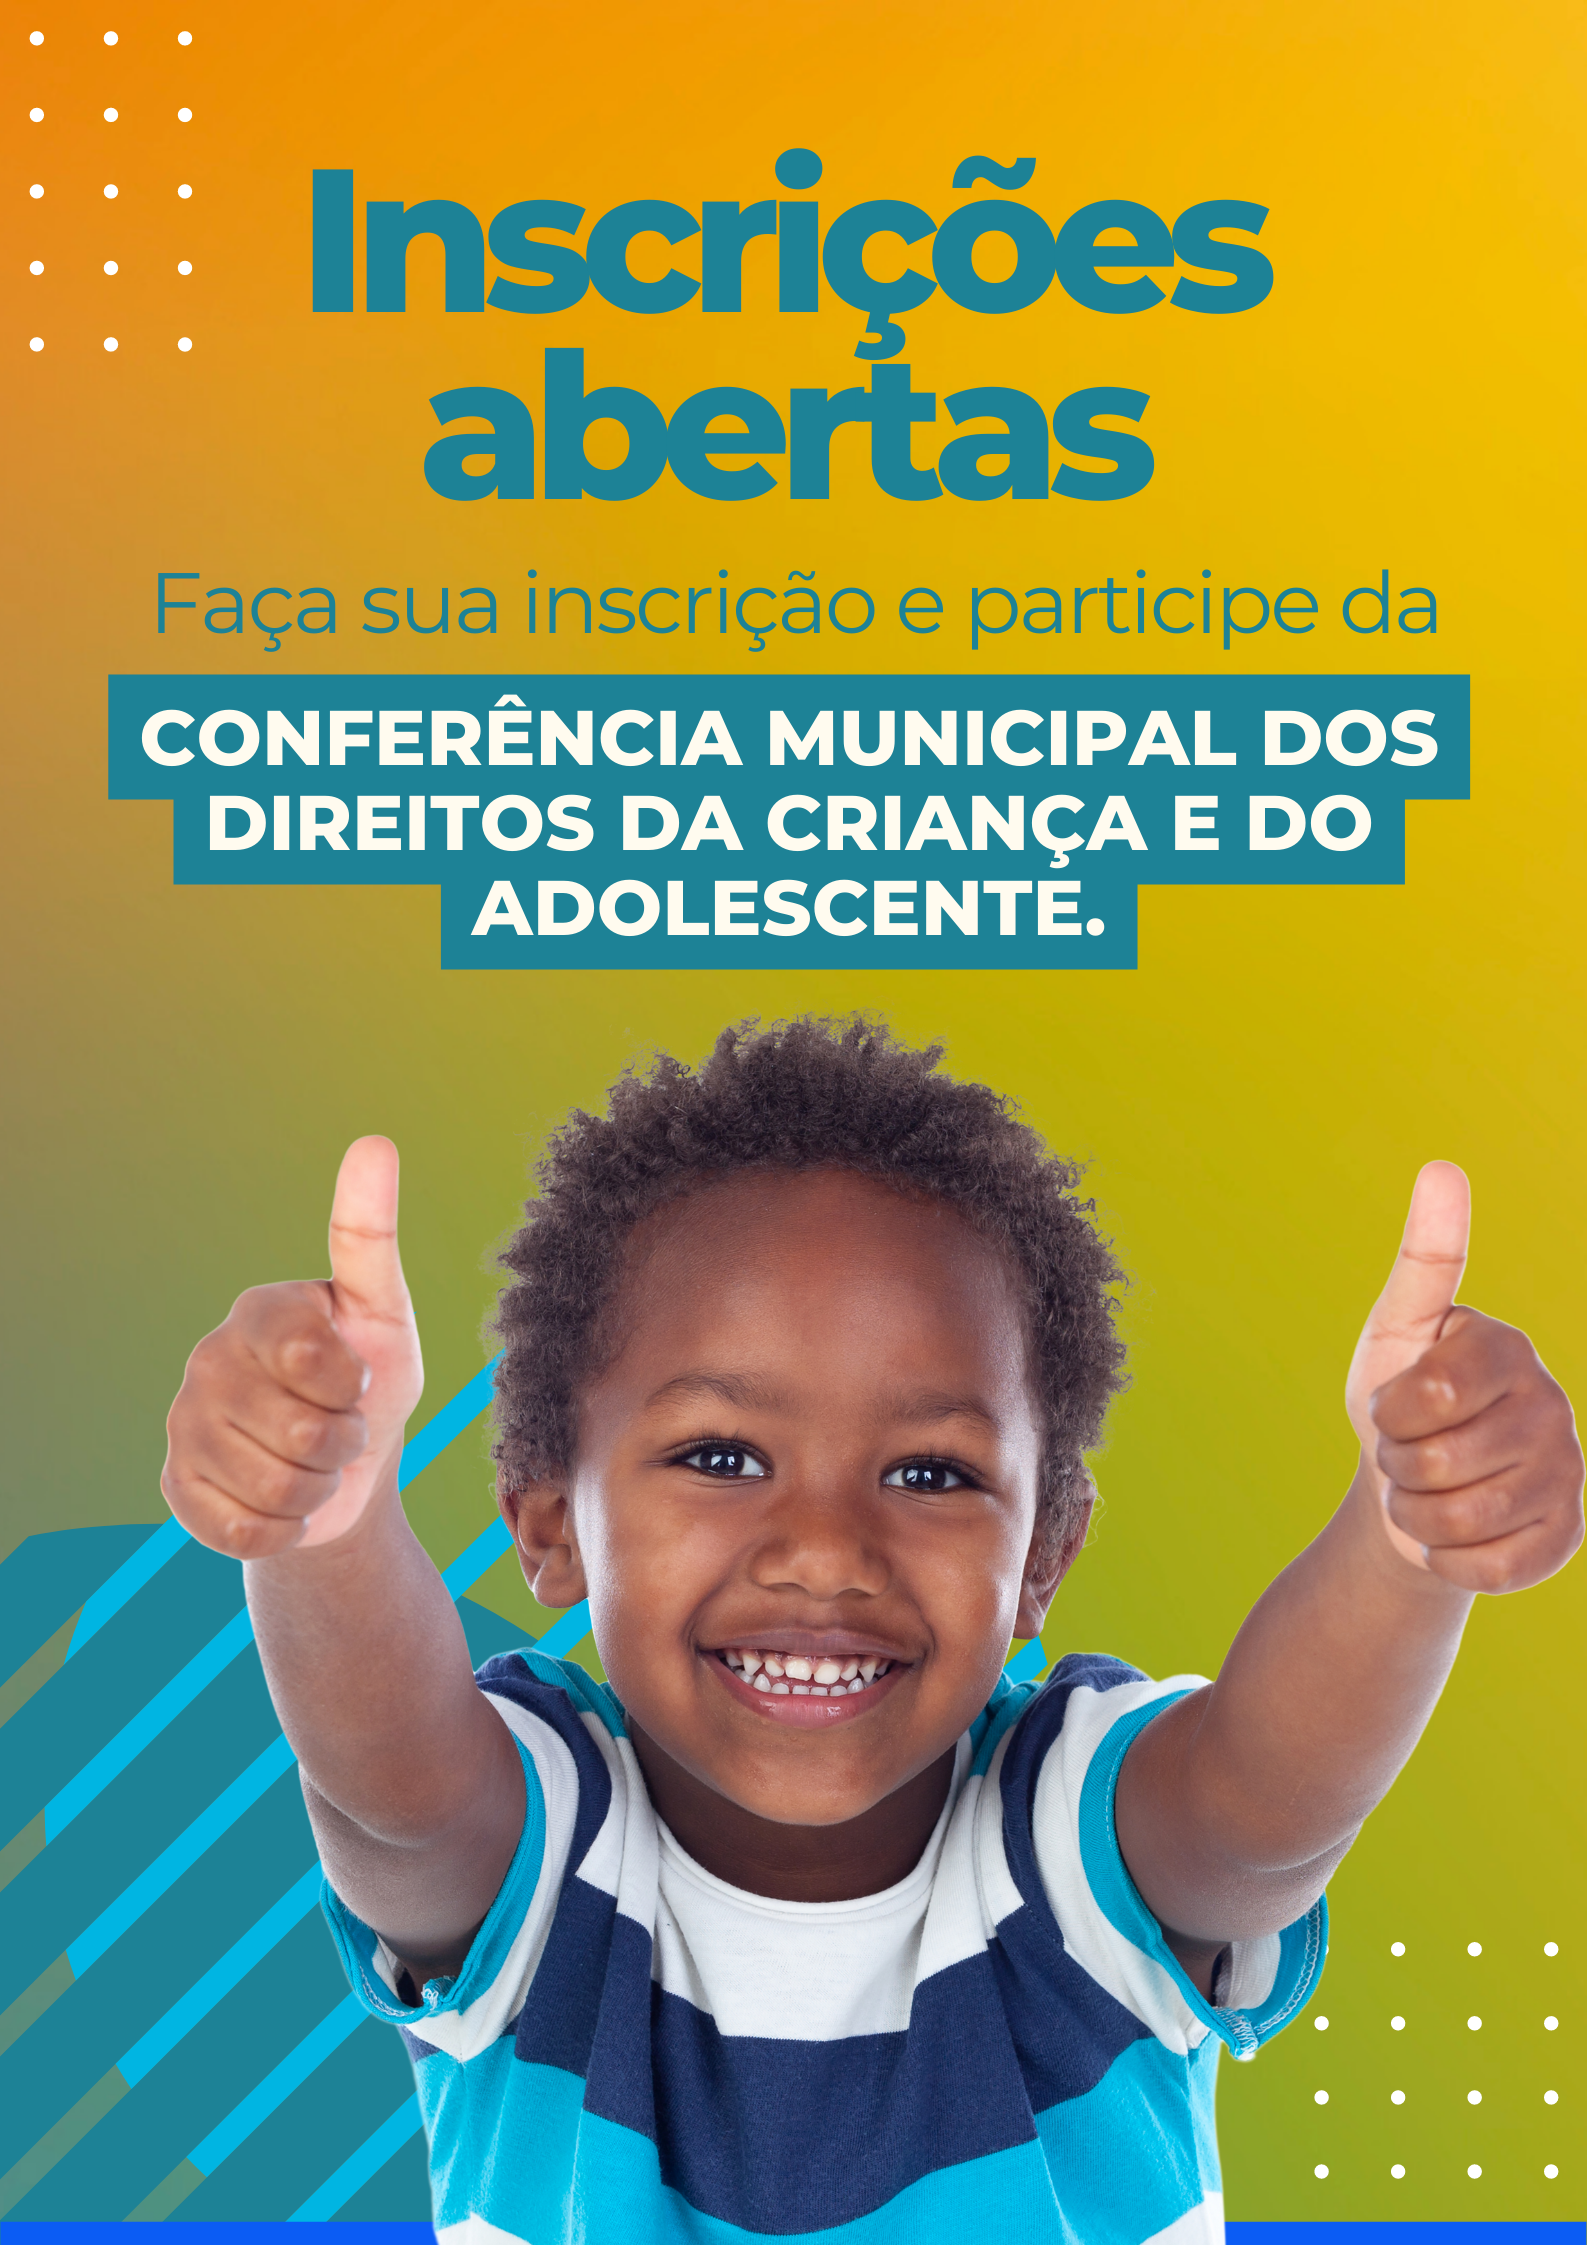 Faça sua inscrição e participe da Conferência Municipal dos Direitos da Criança e do Adolescente.